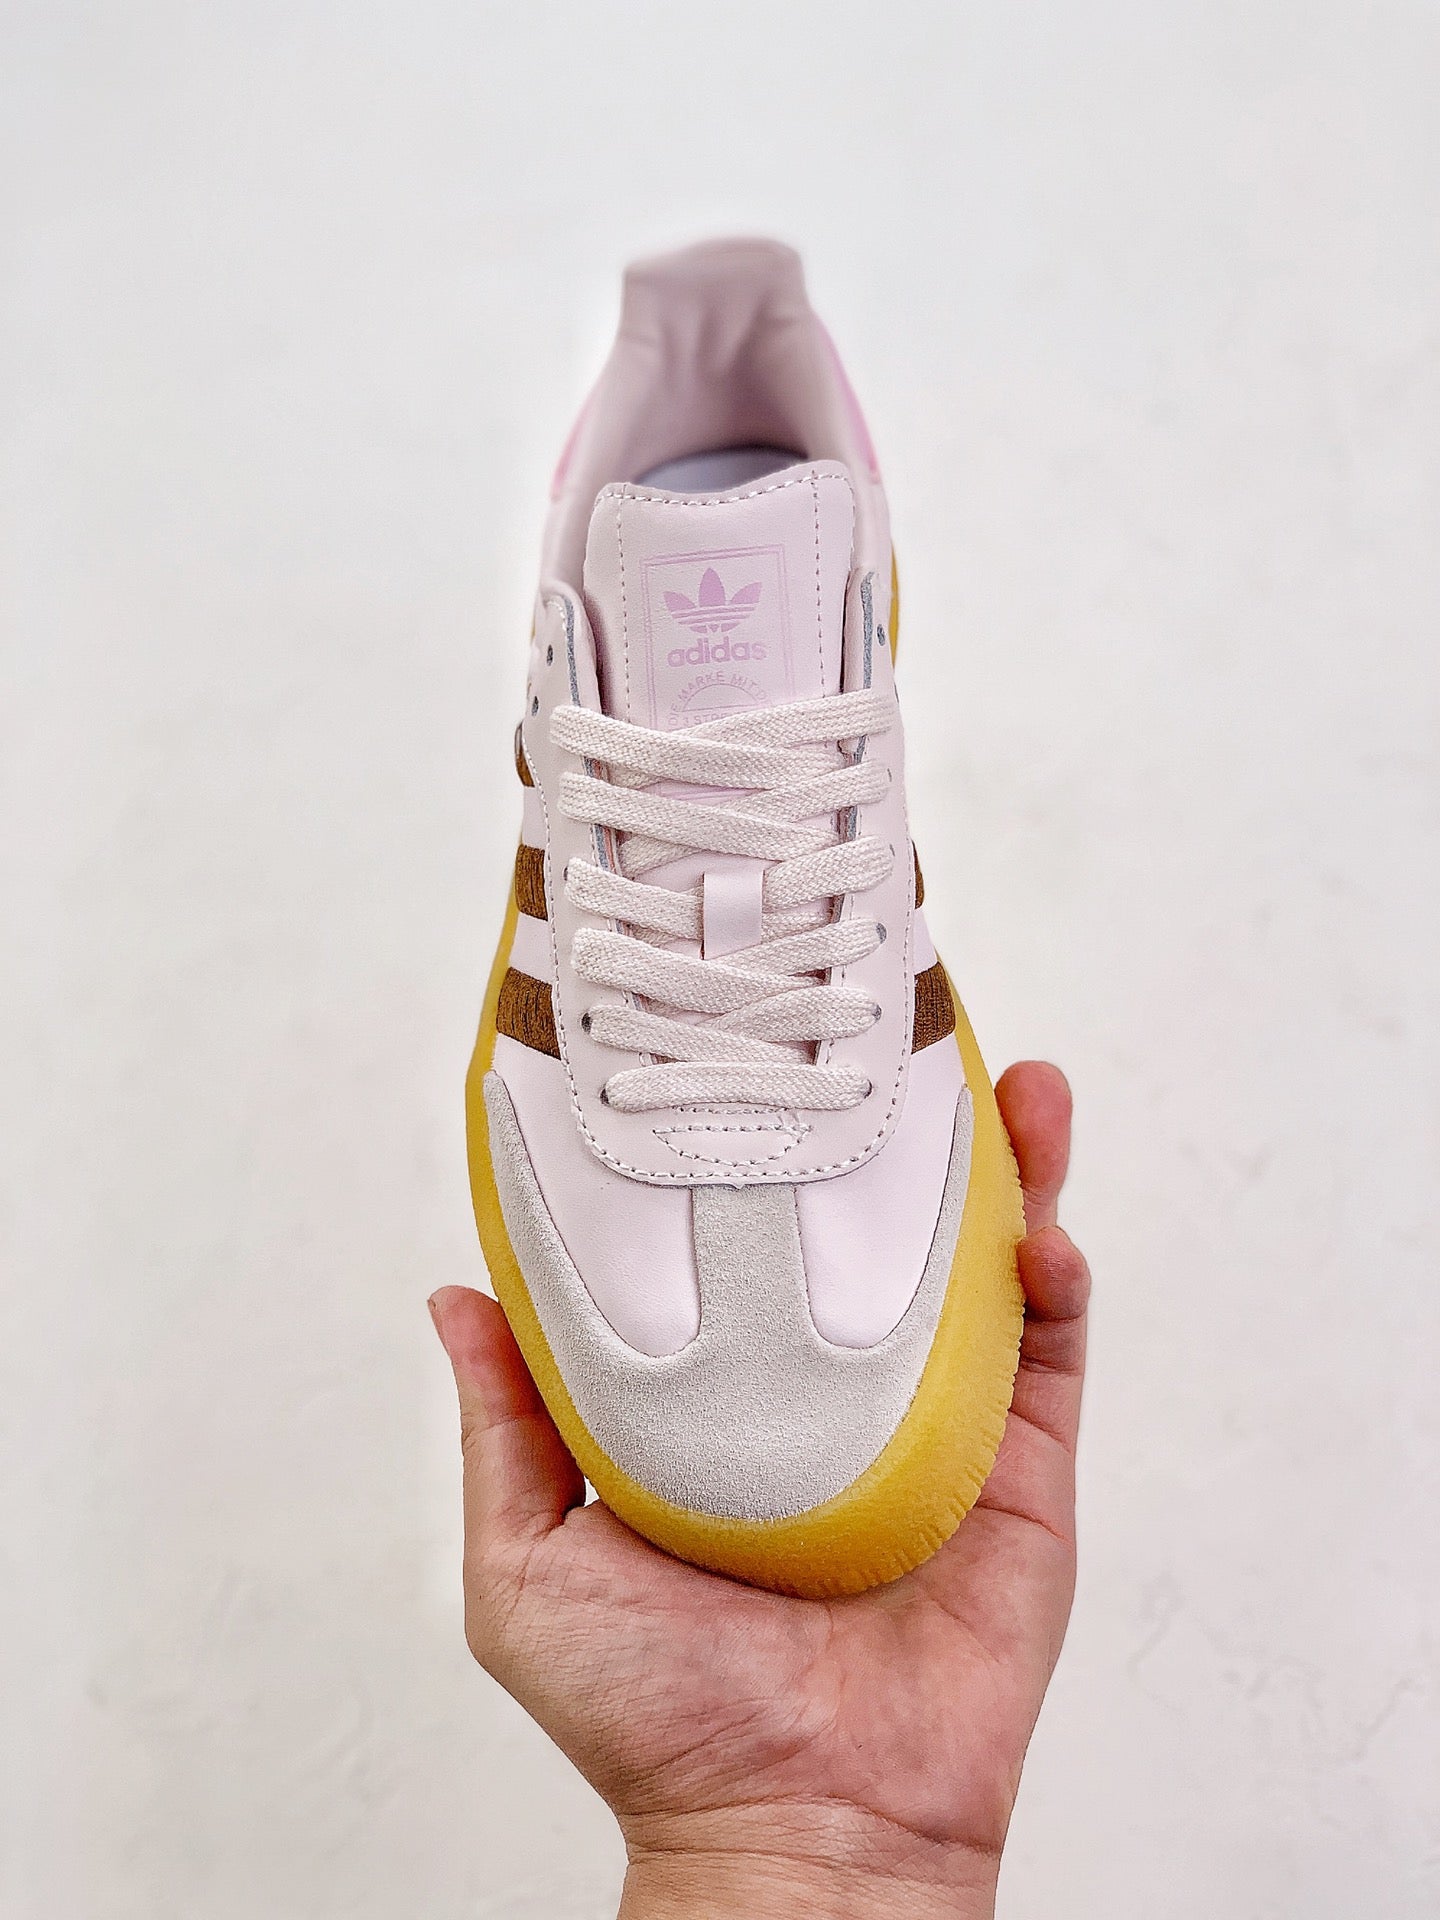 Adidas samba pink yellow shoes